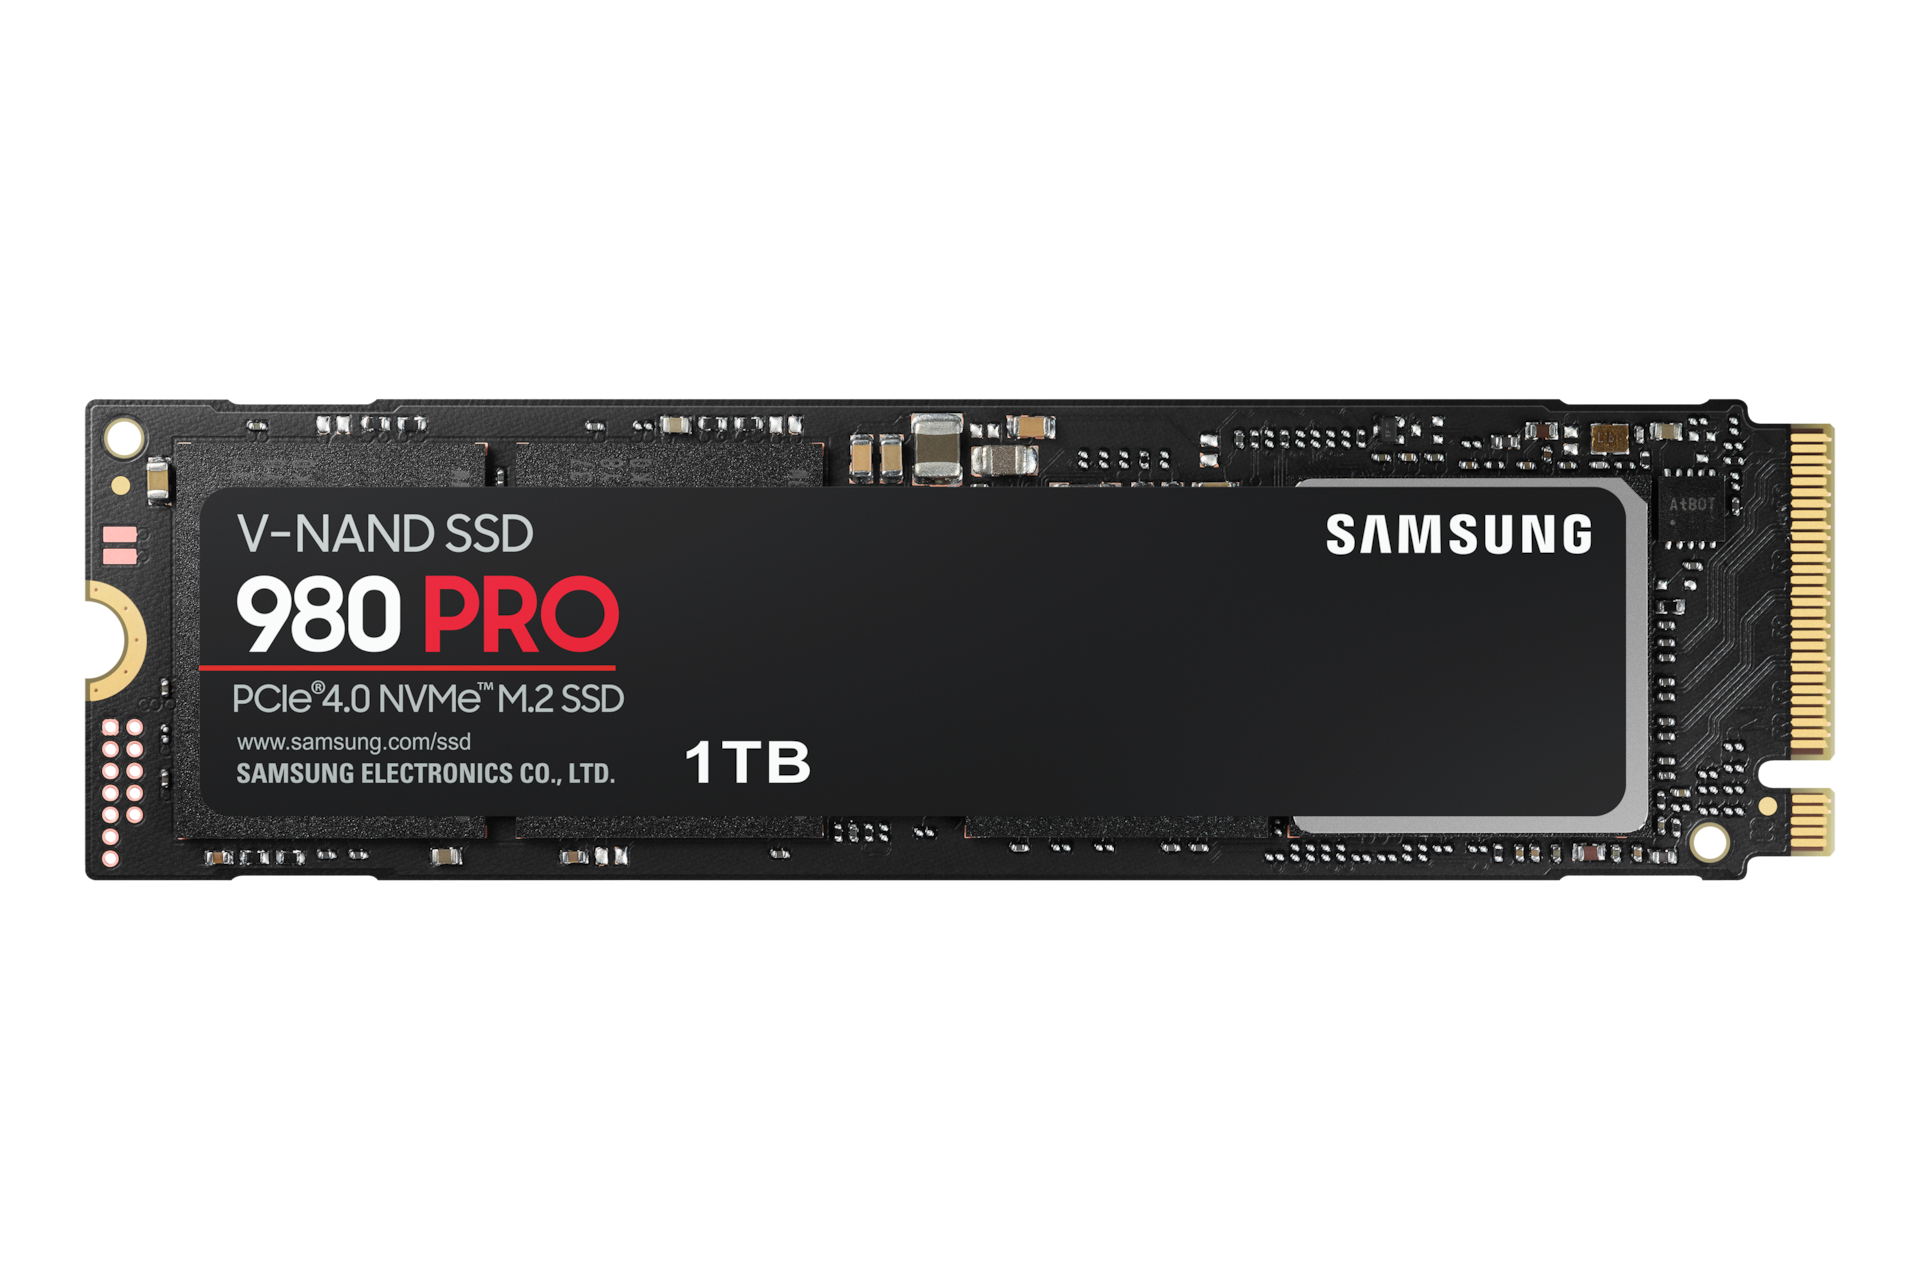 SSD 980 PRO 1TB PCle 4.0 NVMe Disco duro interno | España